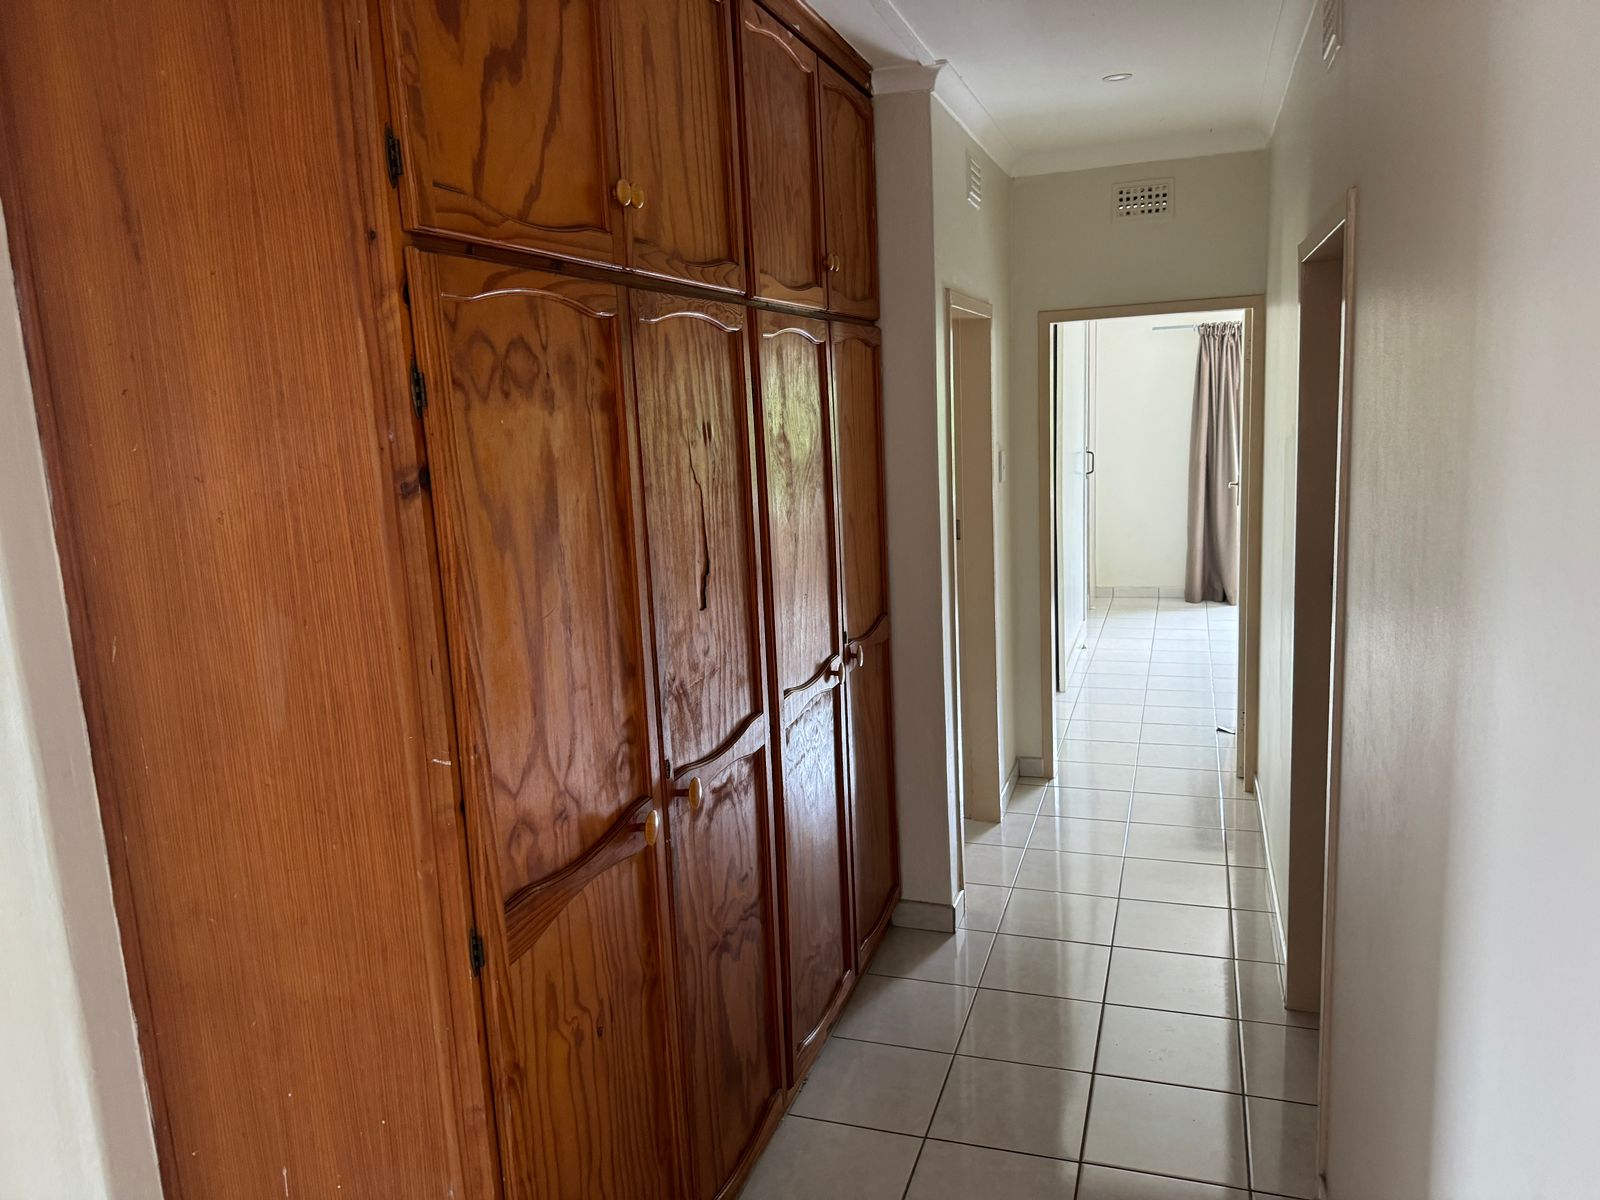 4 Bedroom Property for Sale in Empangeni Central KwaZulu-Natal